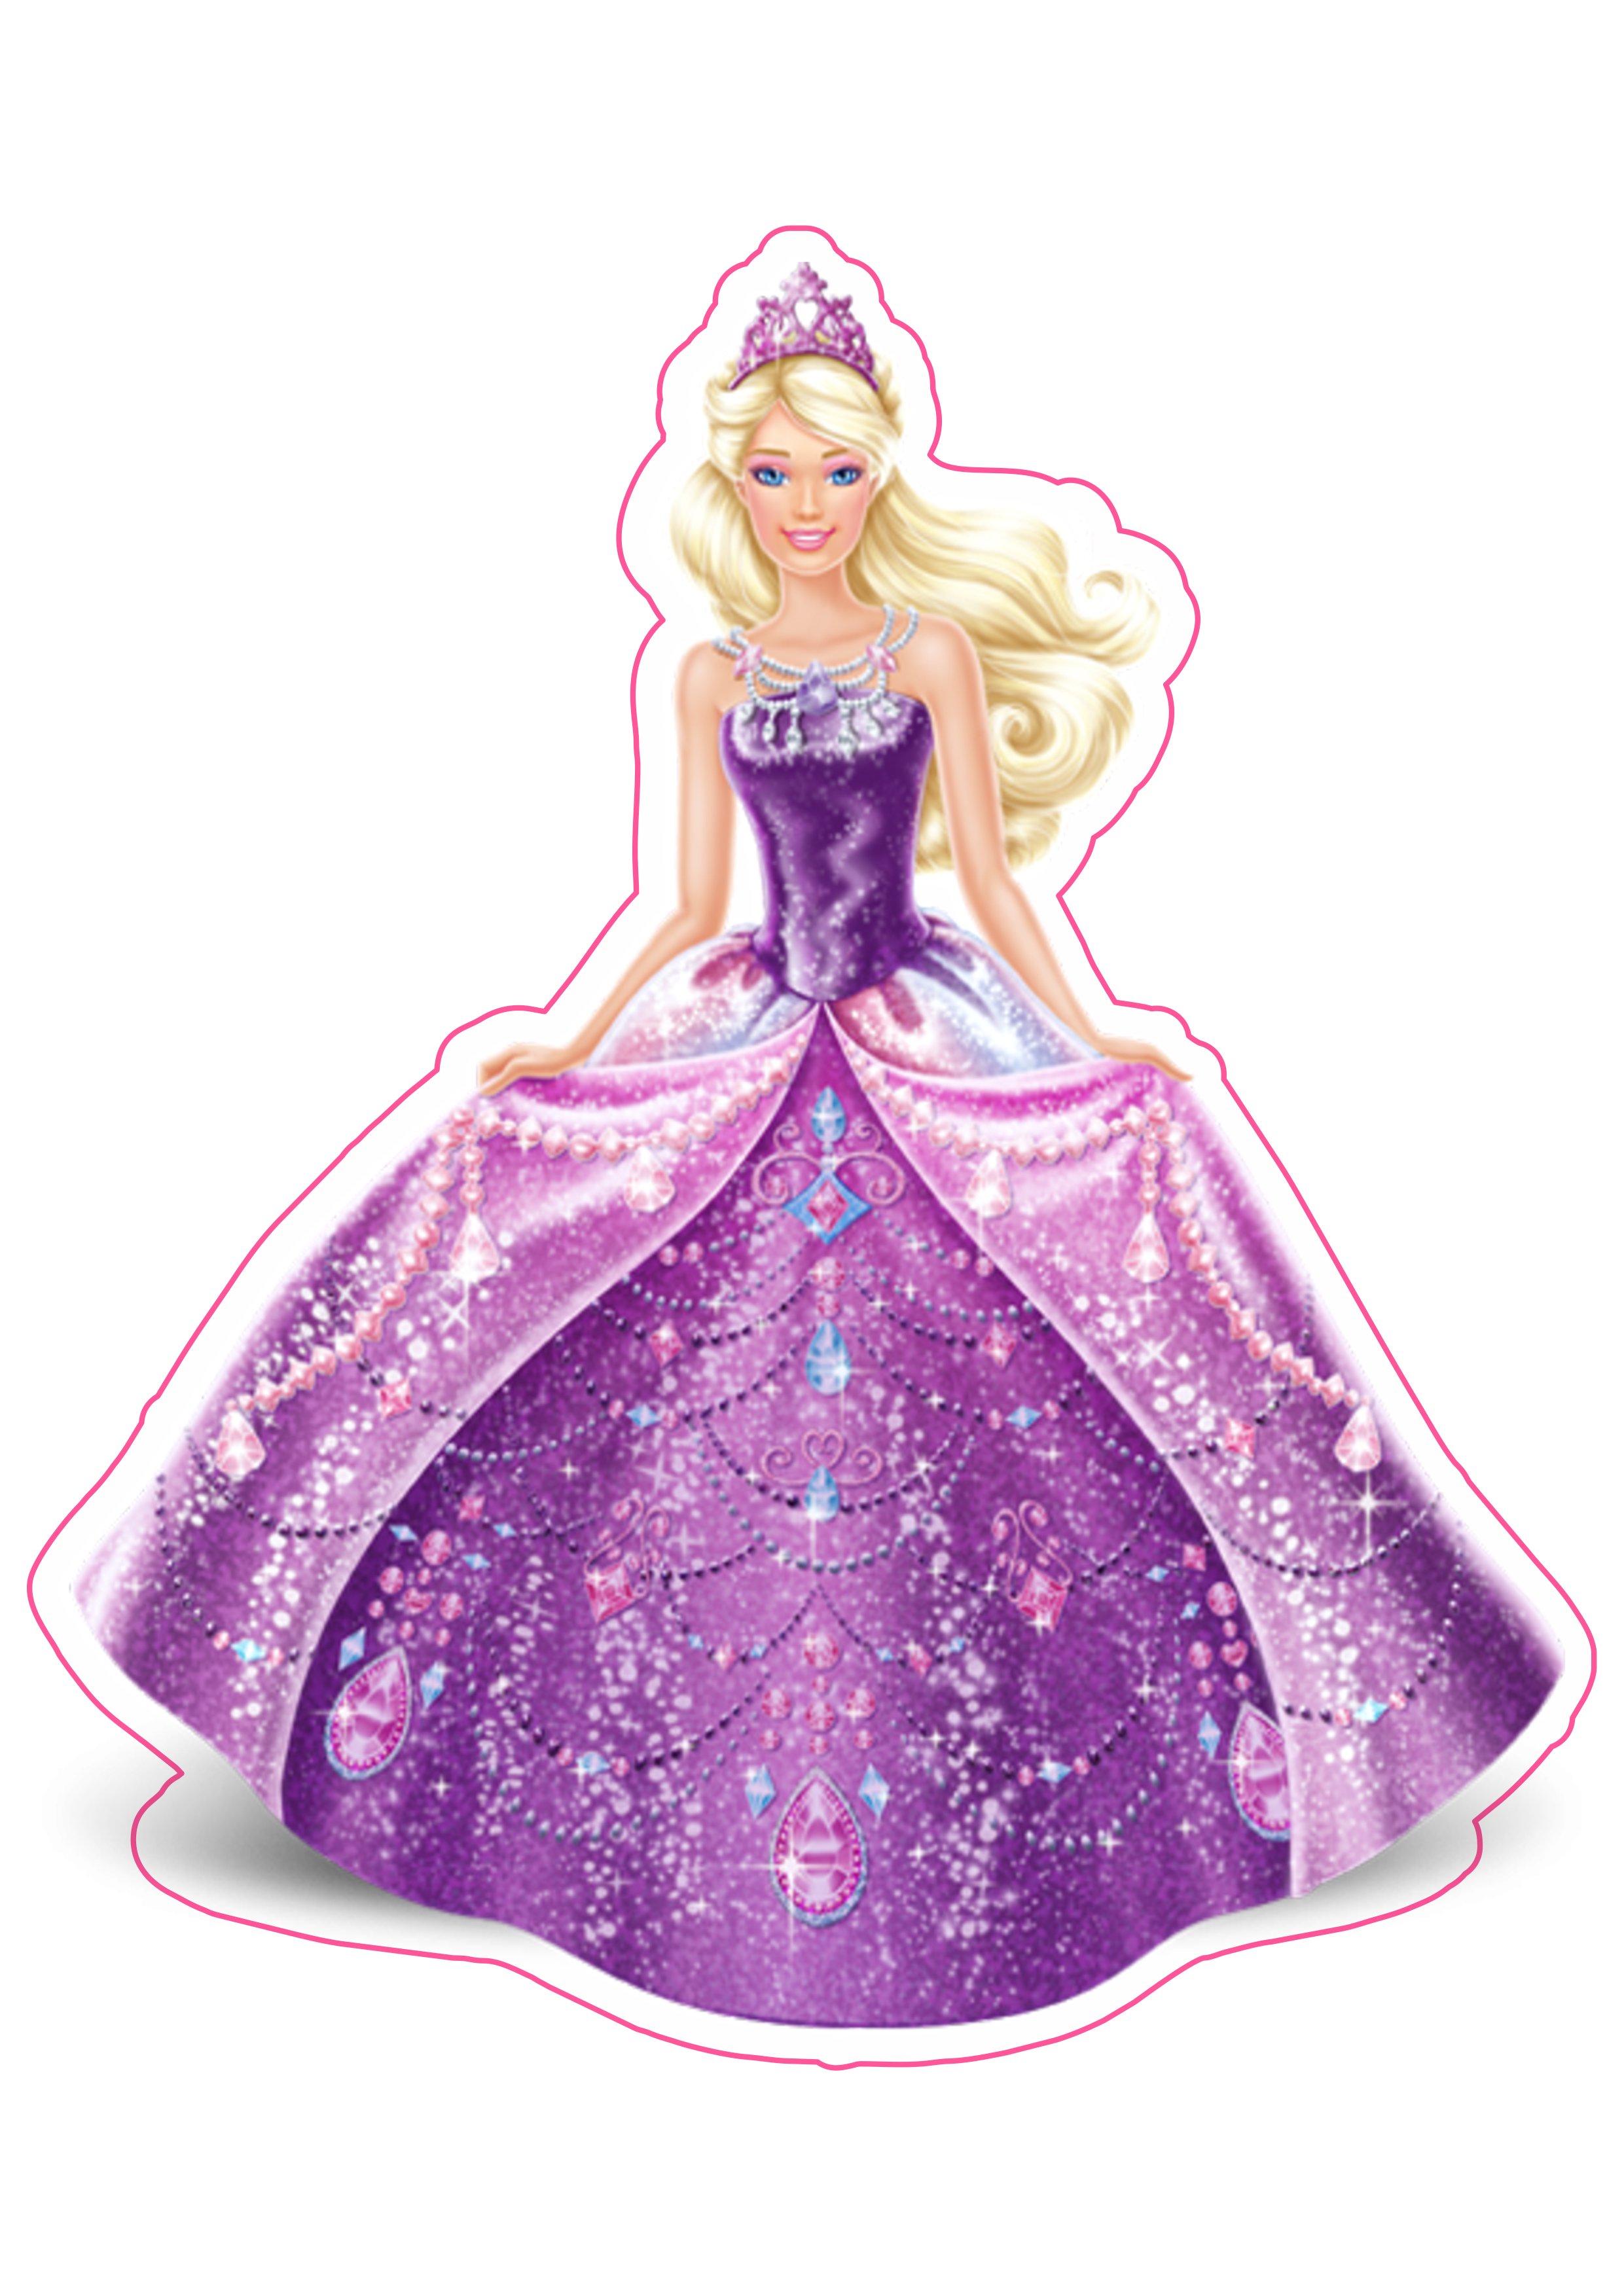 Barbie princesa vestido lilás personagem fictício imagem grátis fundo transparente com contorno png